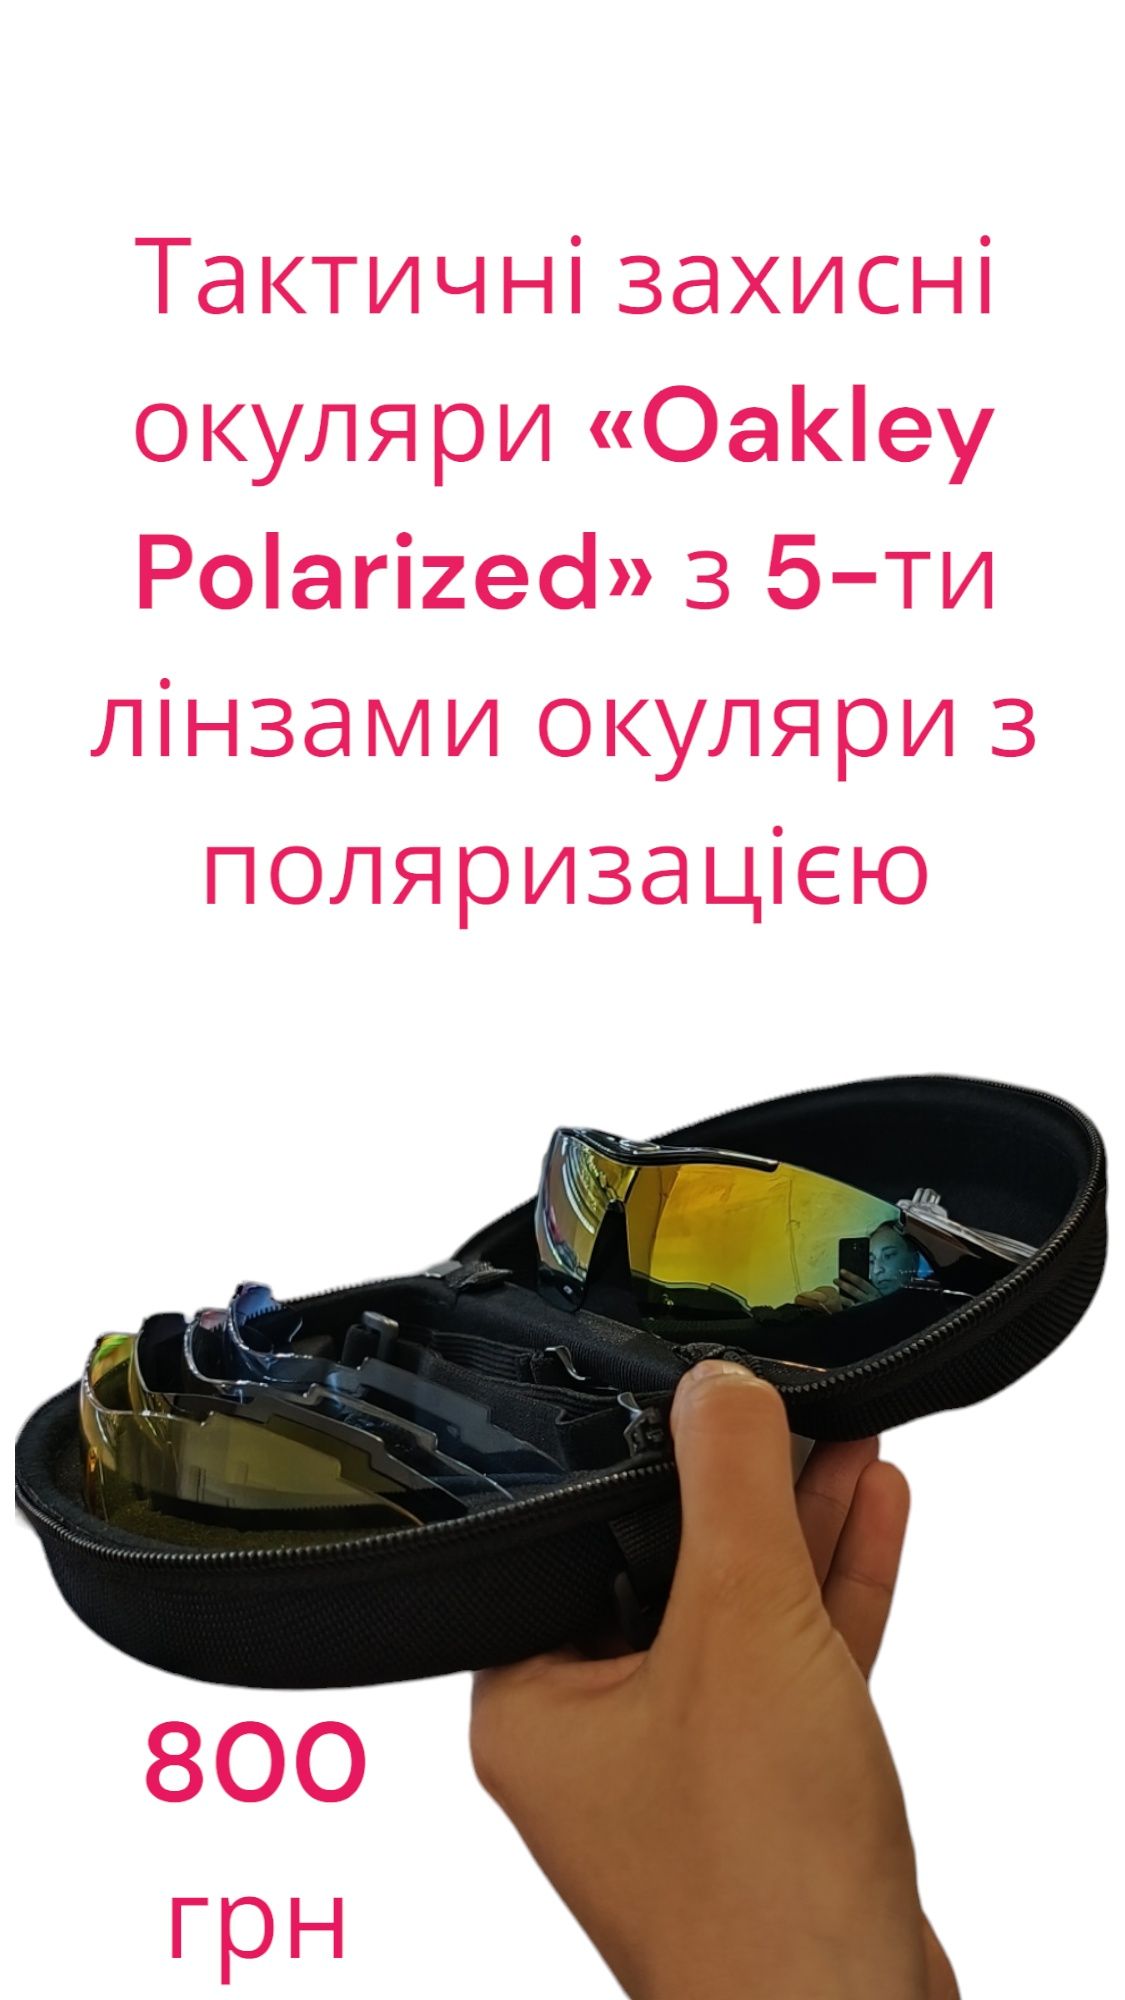 Тактичні захисні окуляри «Oakley Polarized» з 5-ти лінзами окуляри з п